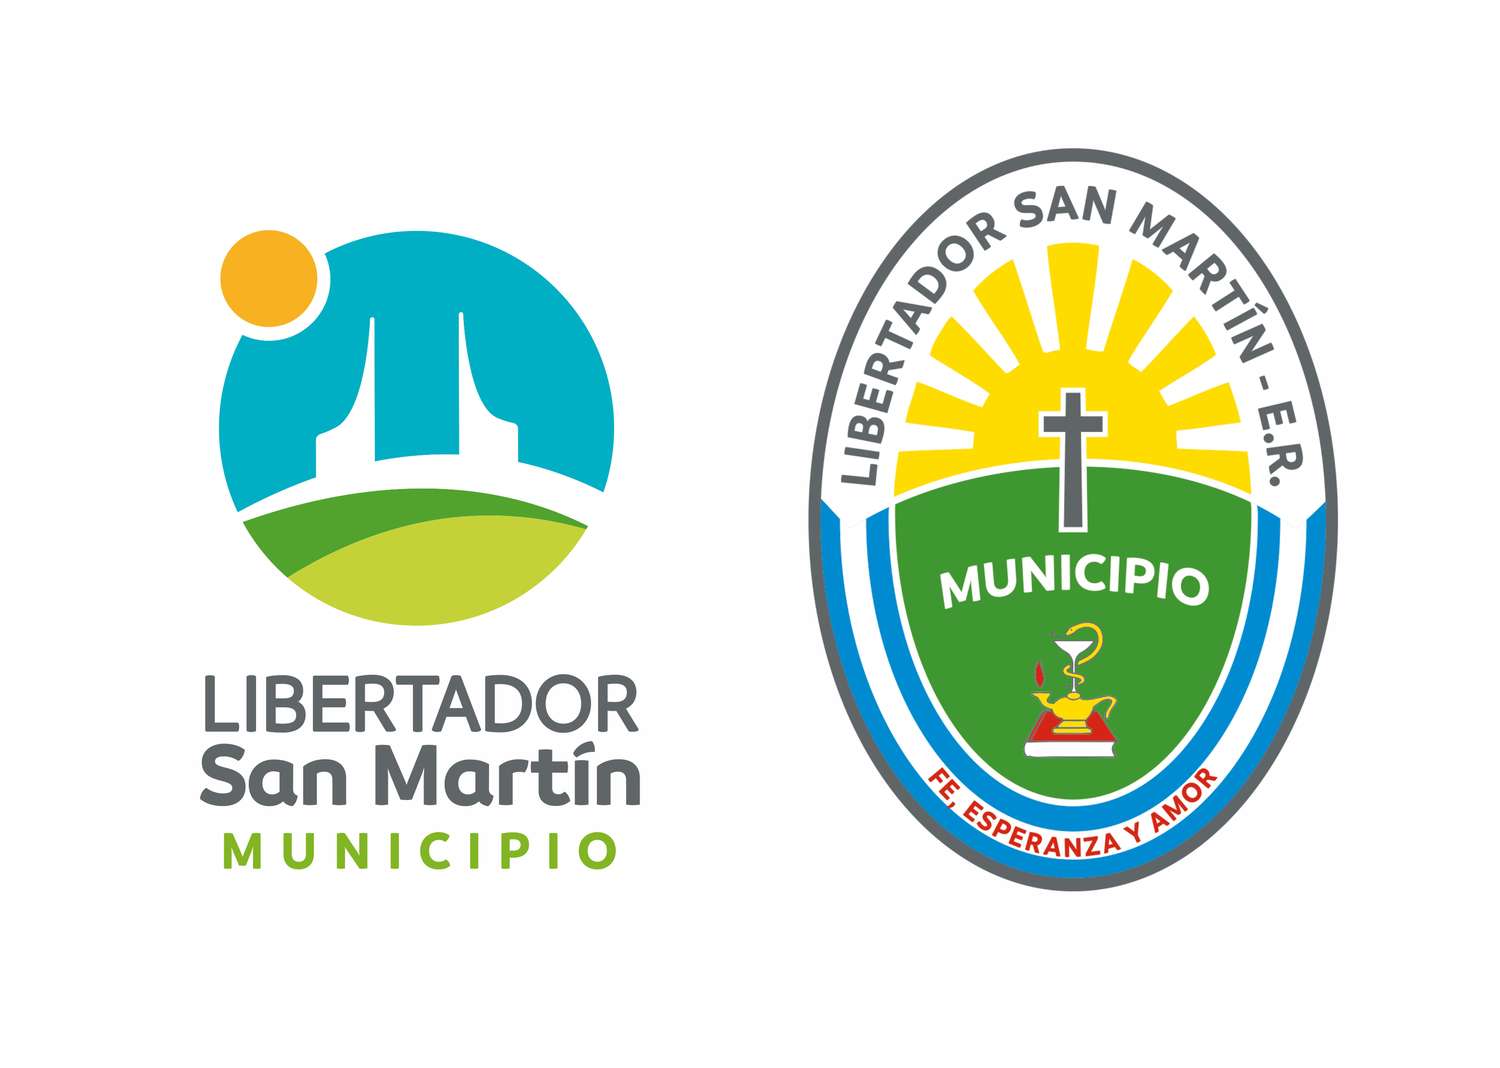 Municipio adaptó su escudo y cuenta con nueva marca ciudad